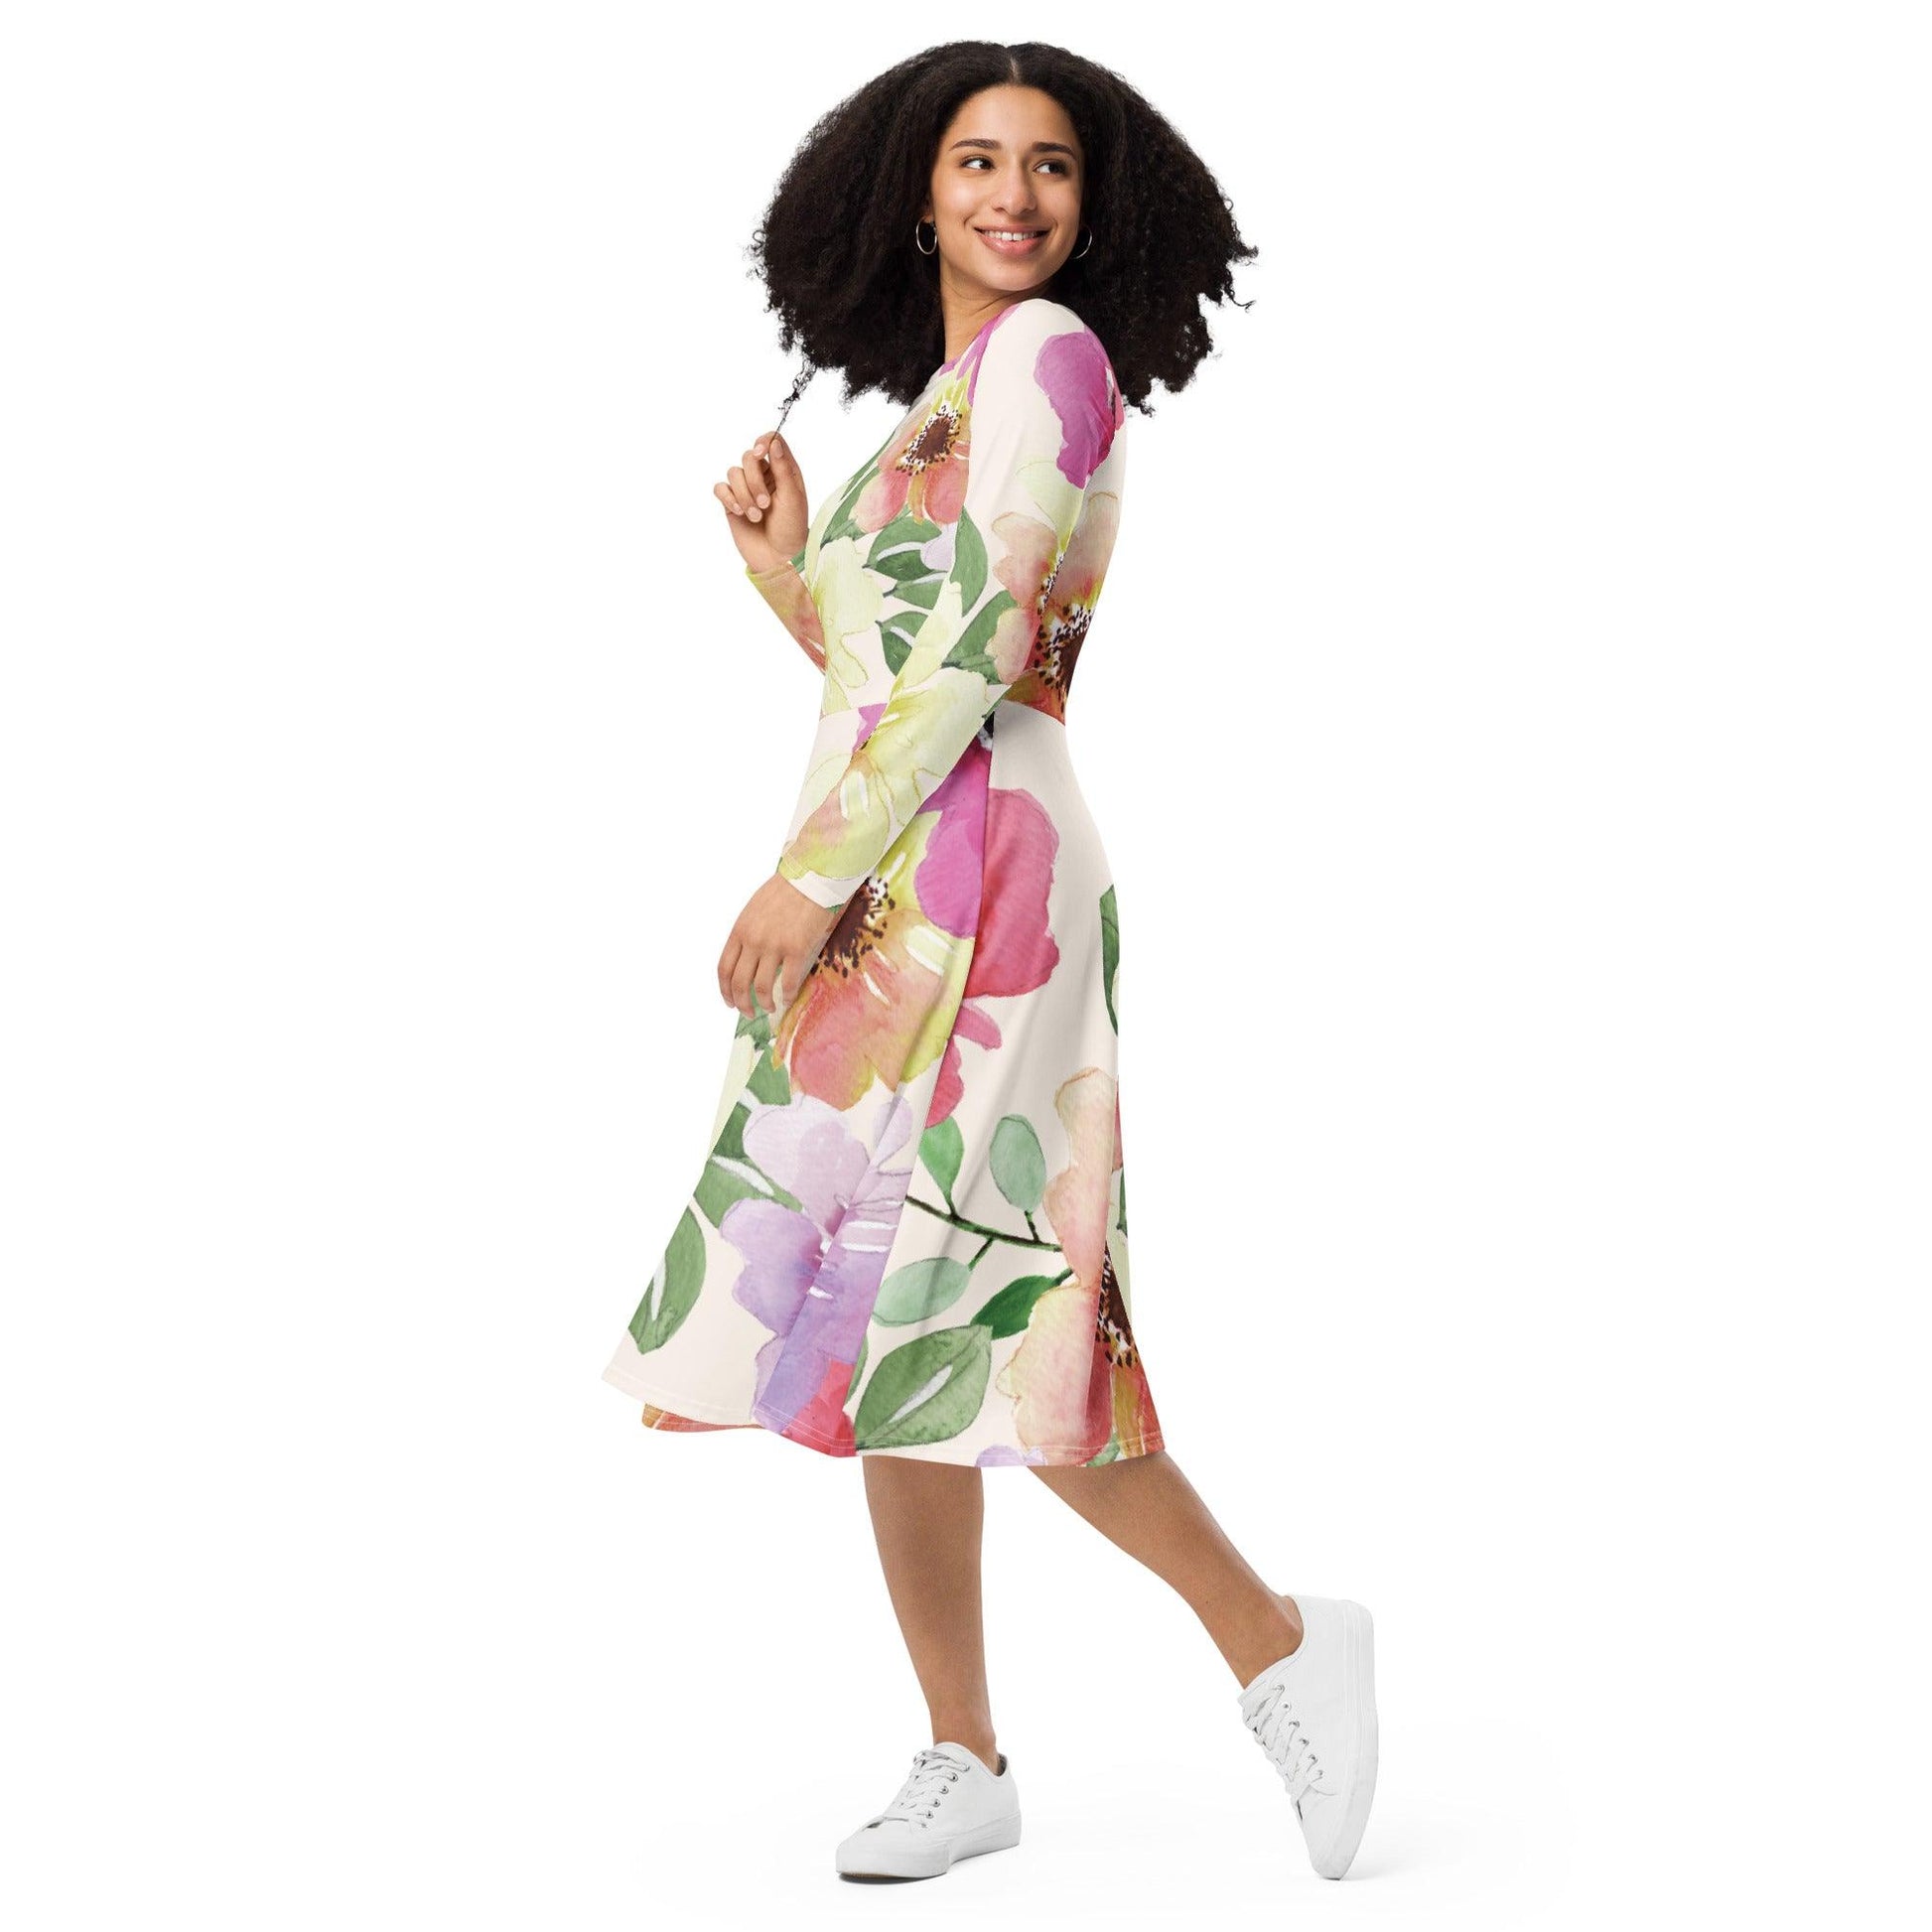 Floral Long Sleeve Midi Dress - L & M Kee, LLC